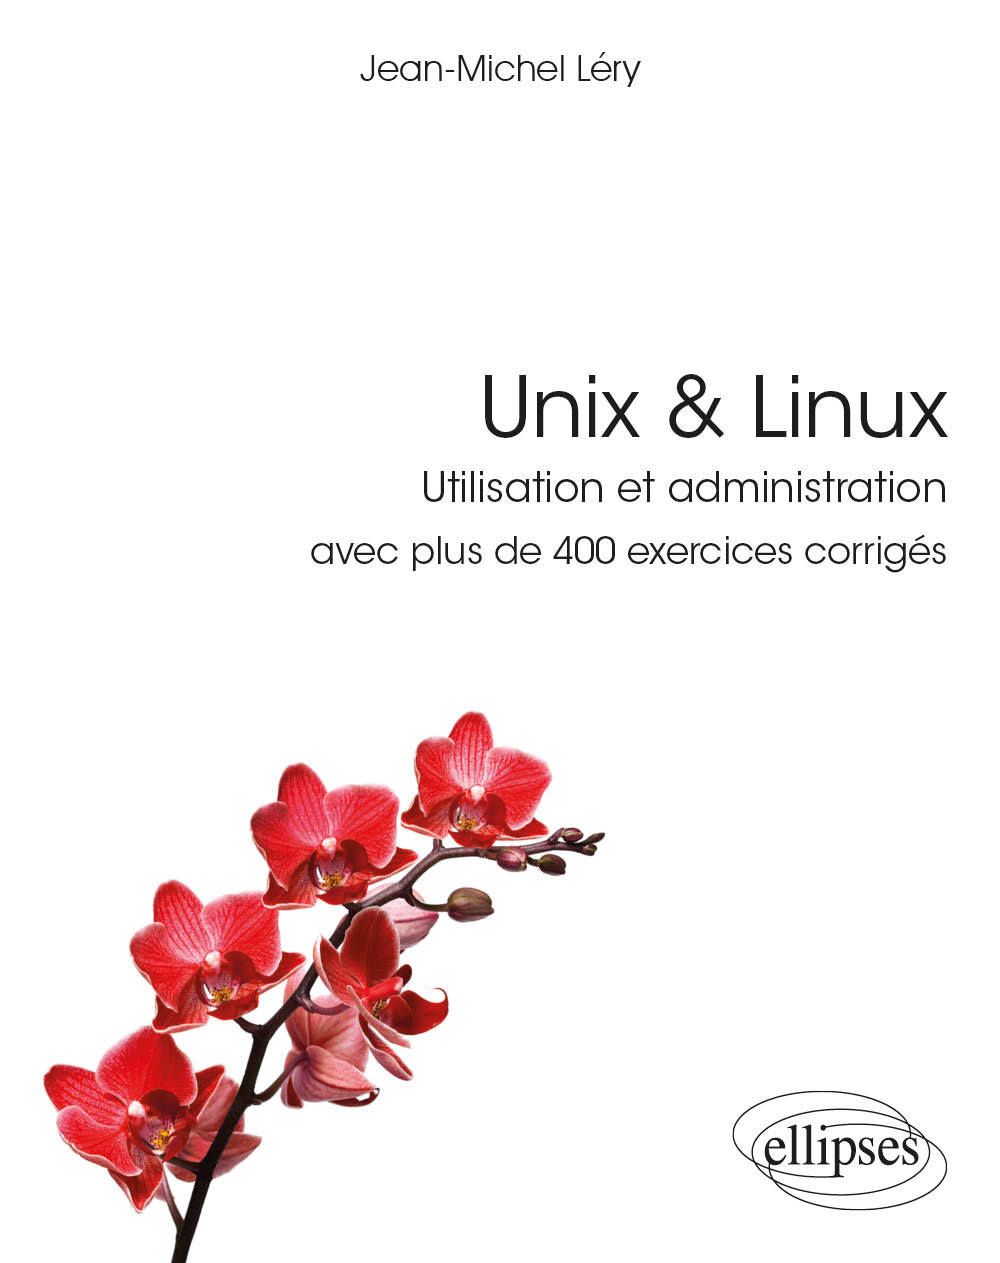 Kniha Unix & Linux - Utilisation et administration - avec plus de 400 exercices corrigés Léry